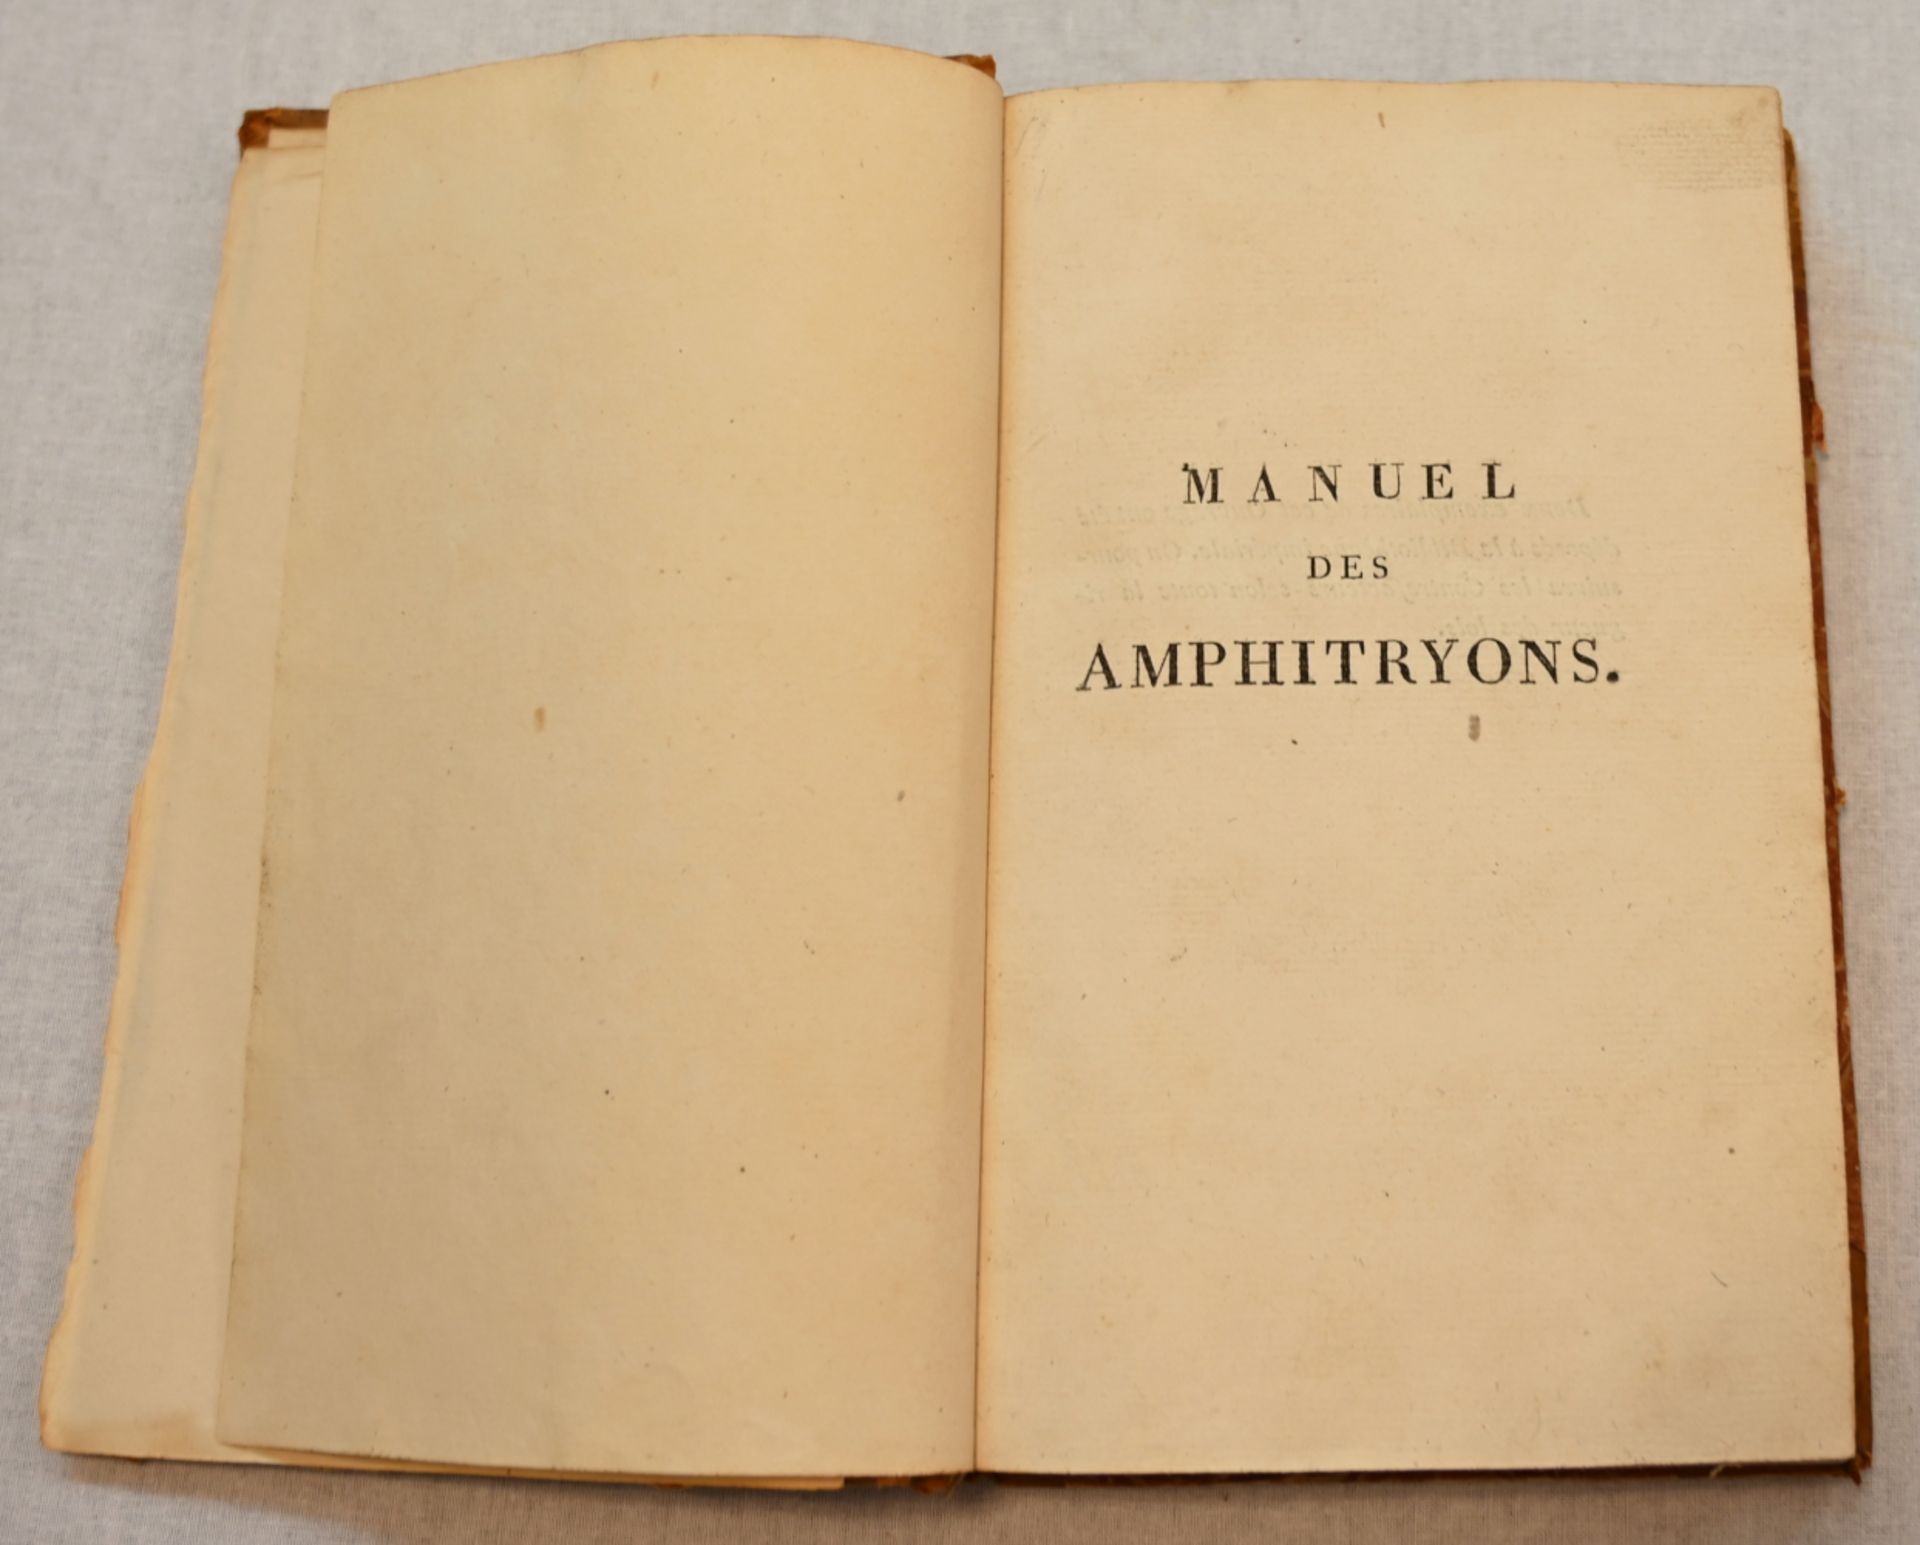 1 Buch "Manuel des amphitryons" von Alexandre Balthazar Laurent GRIMOD DE LA REYNIÈRE, Paris 1808  - Bild 2 aus 4